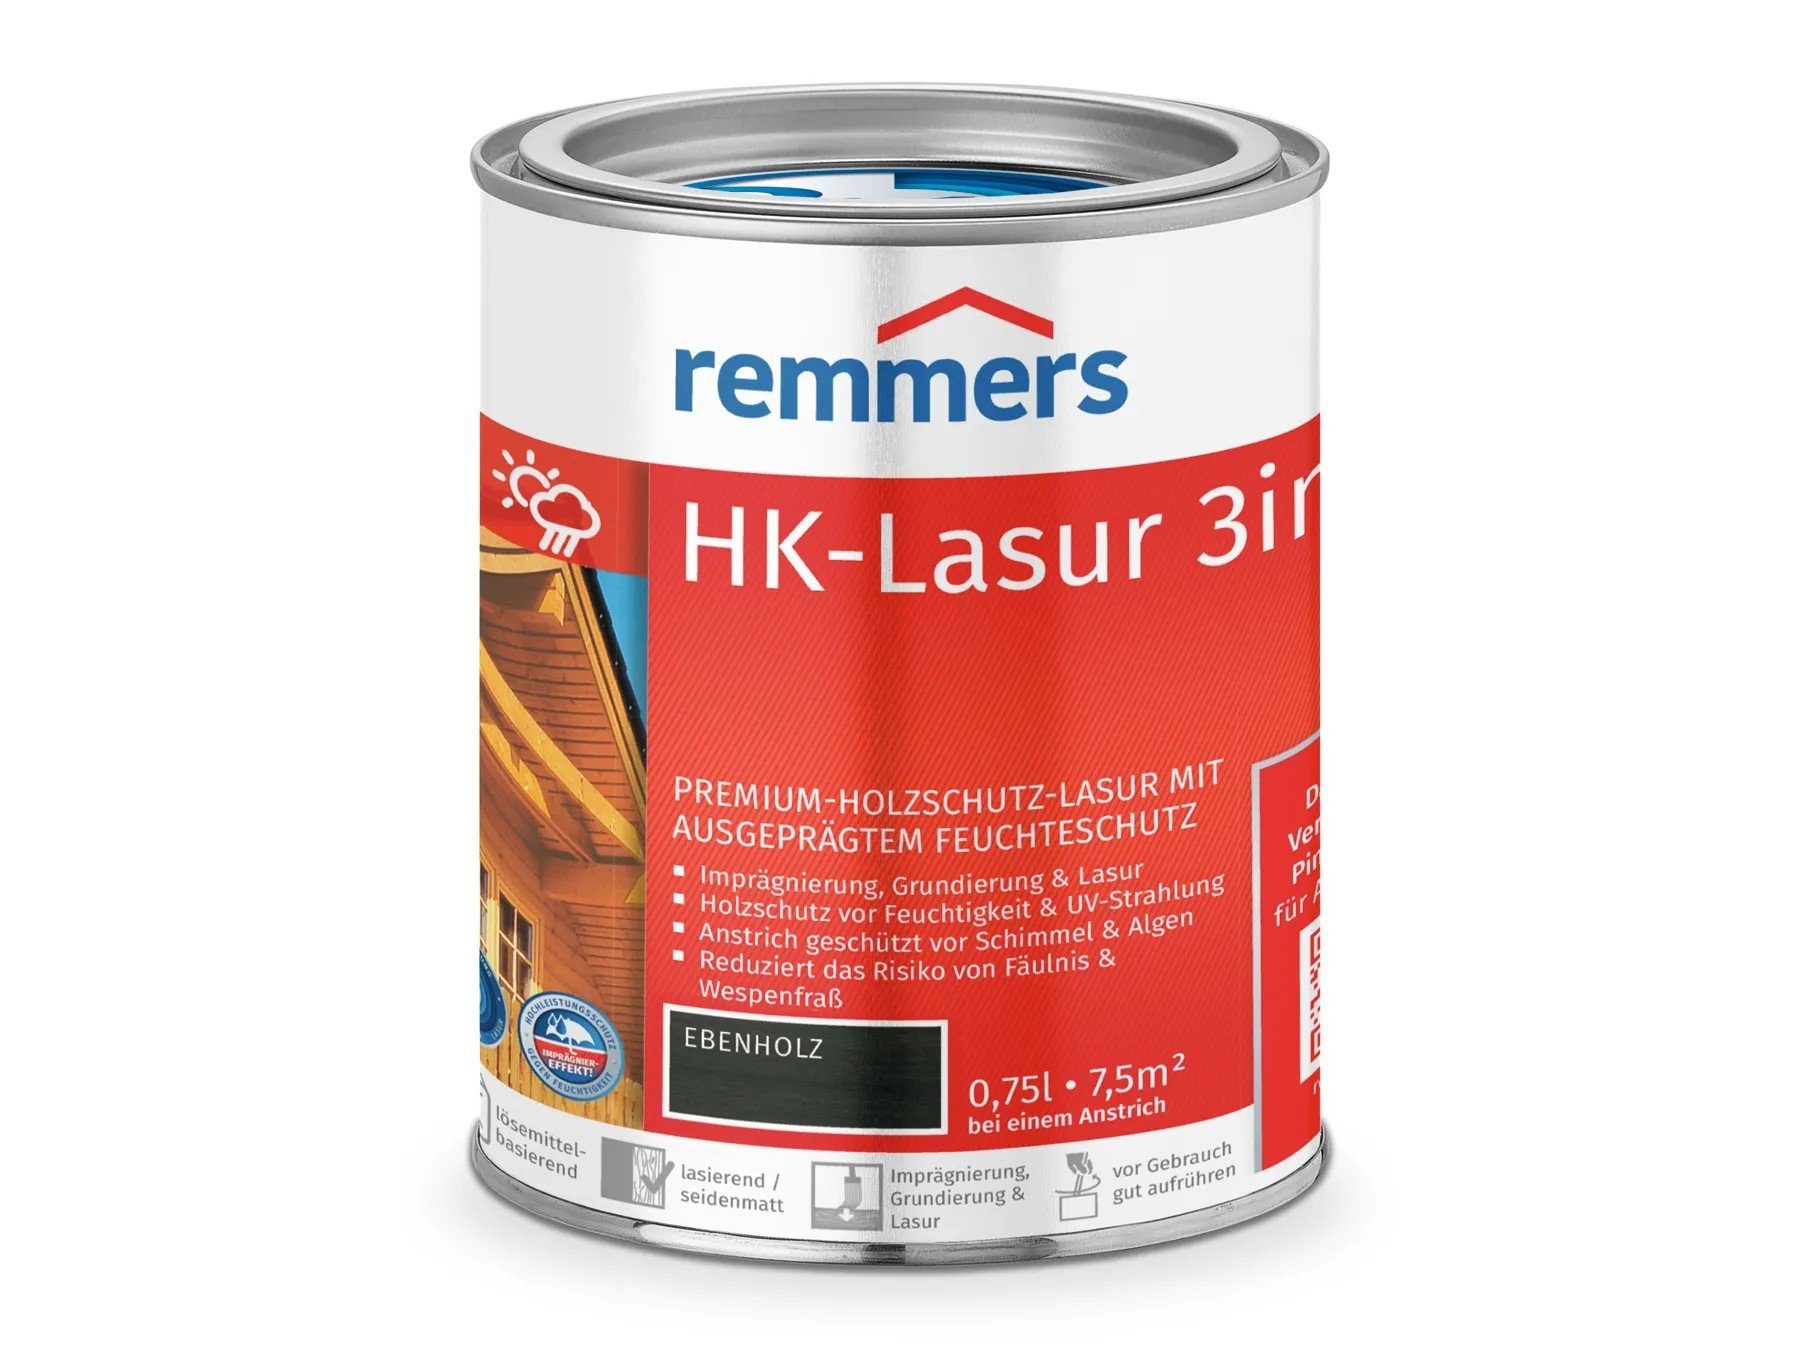 HK-Lasur 3in1 Remmers Holzschutzlasur (RC-790) ebenholz